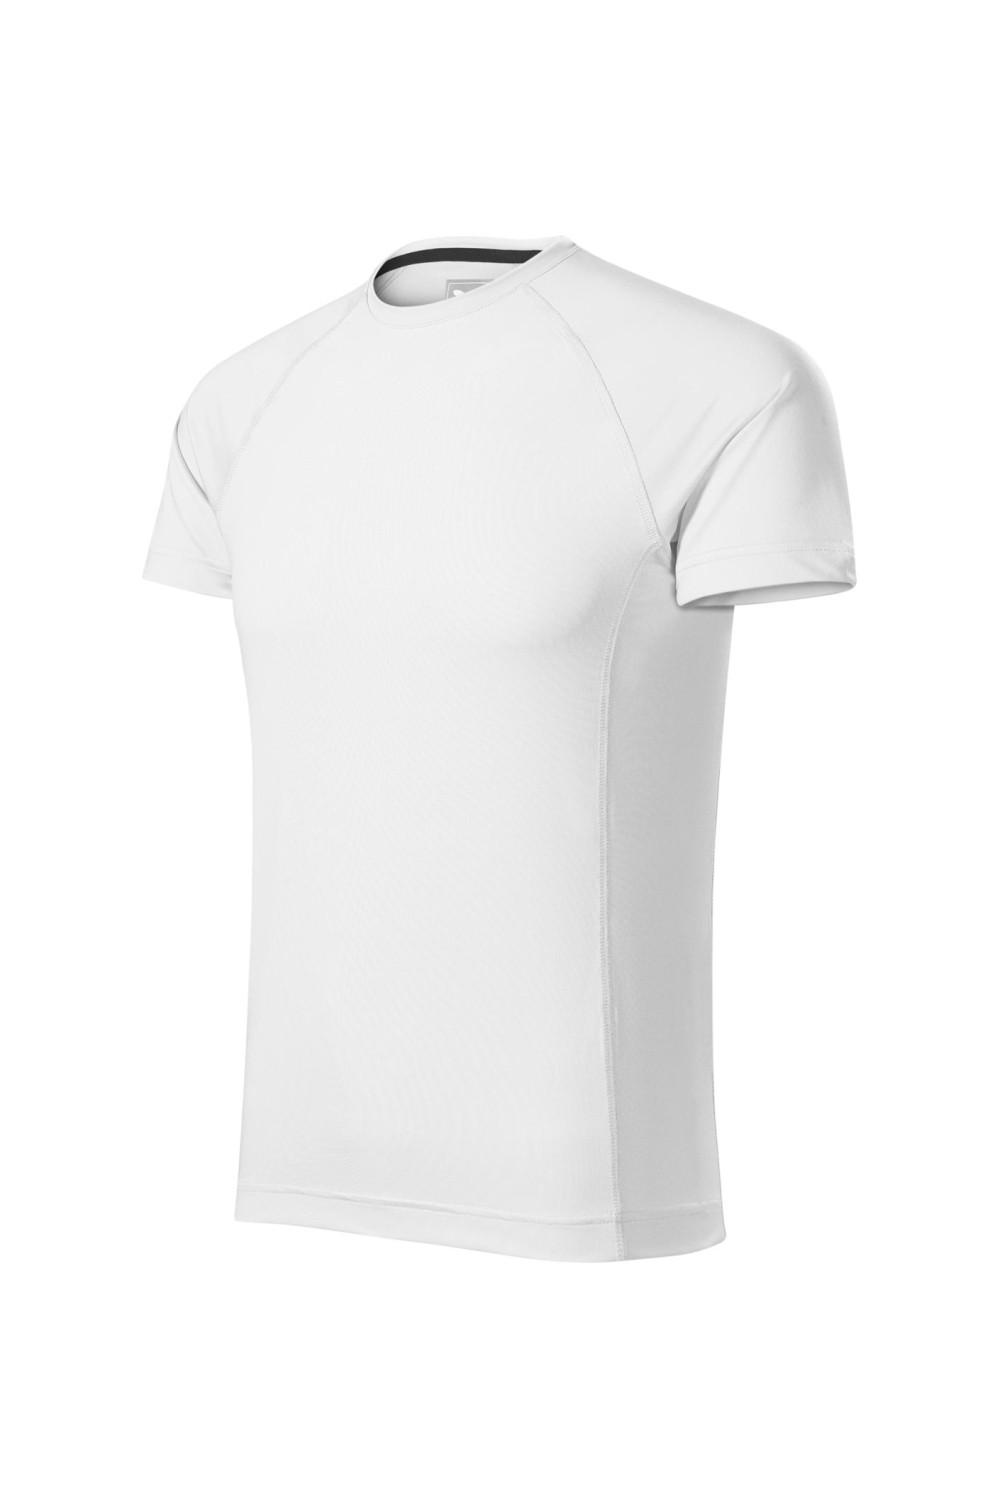 DESTINY 175 MALFINI ADLER Sportowa koszulka męska t-shirt biały